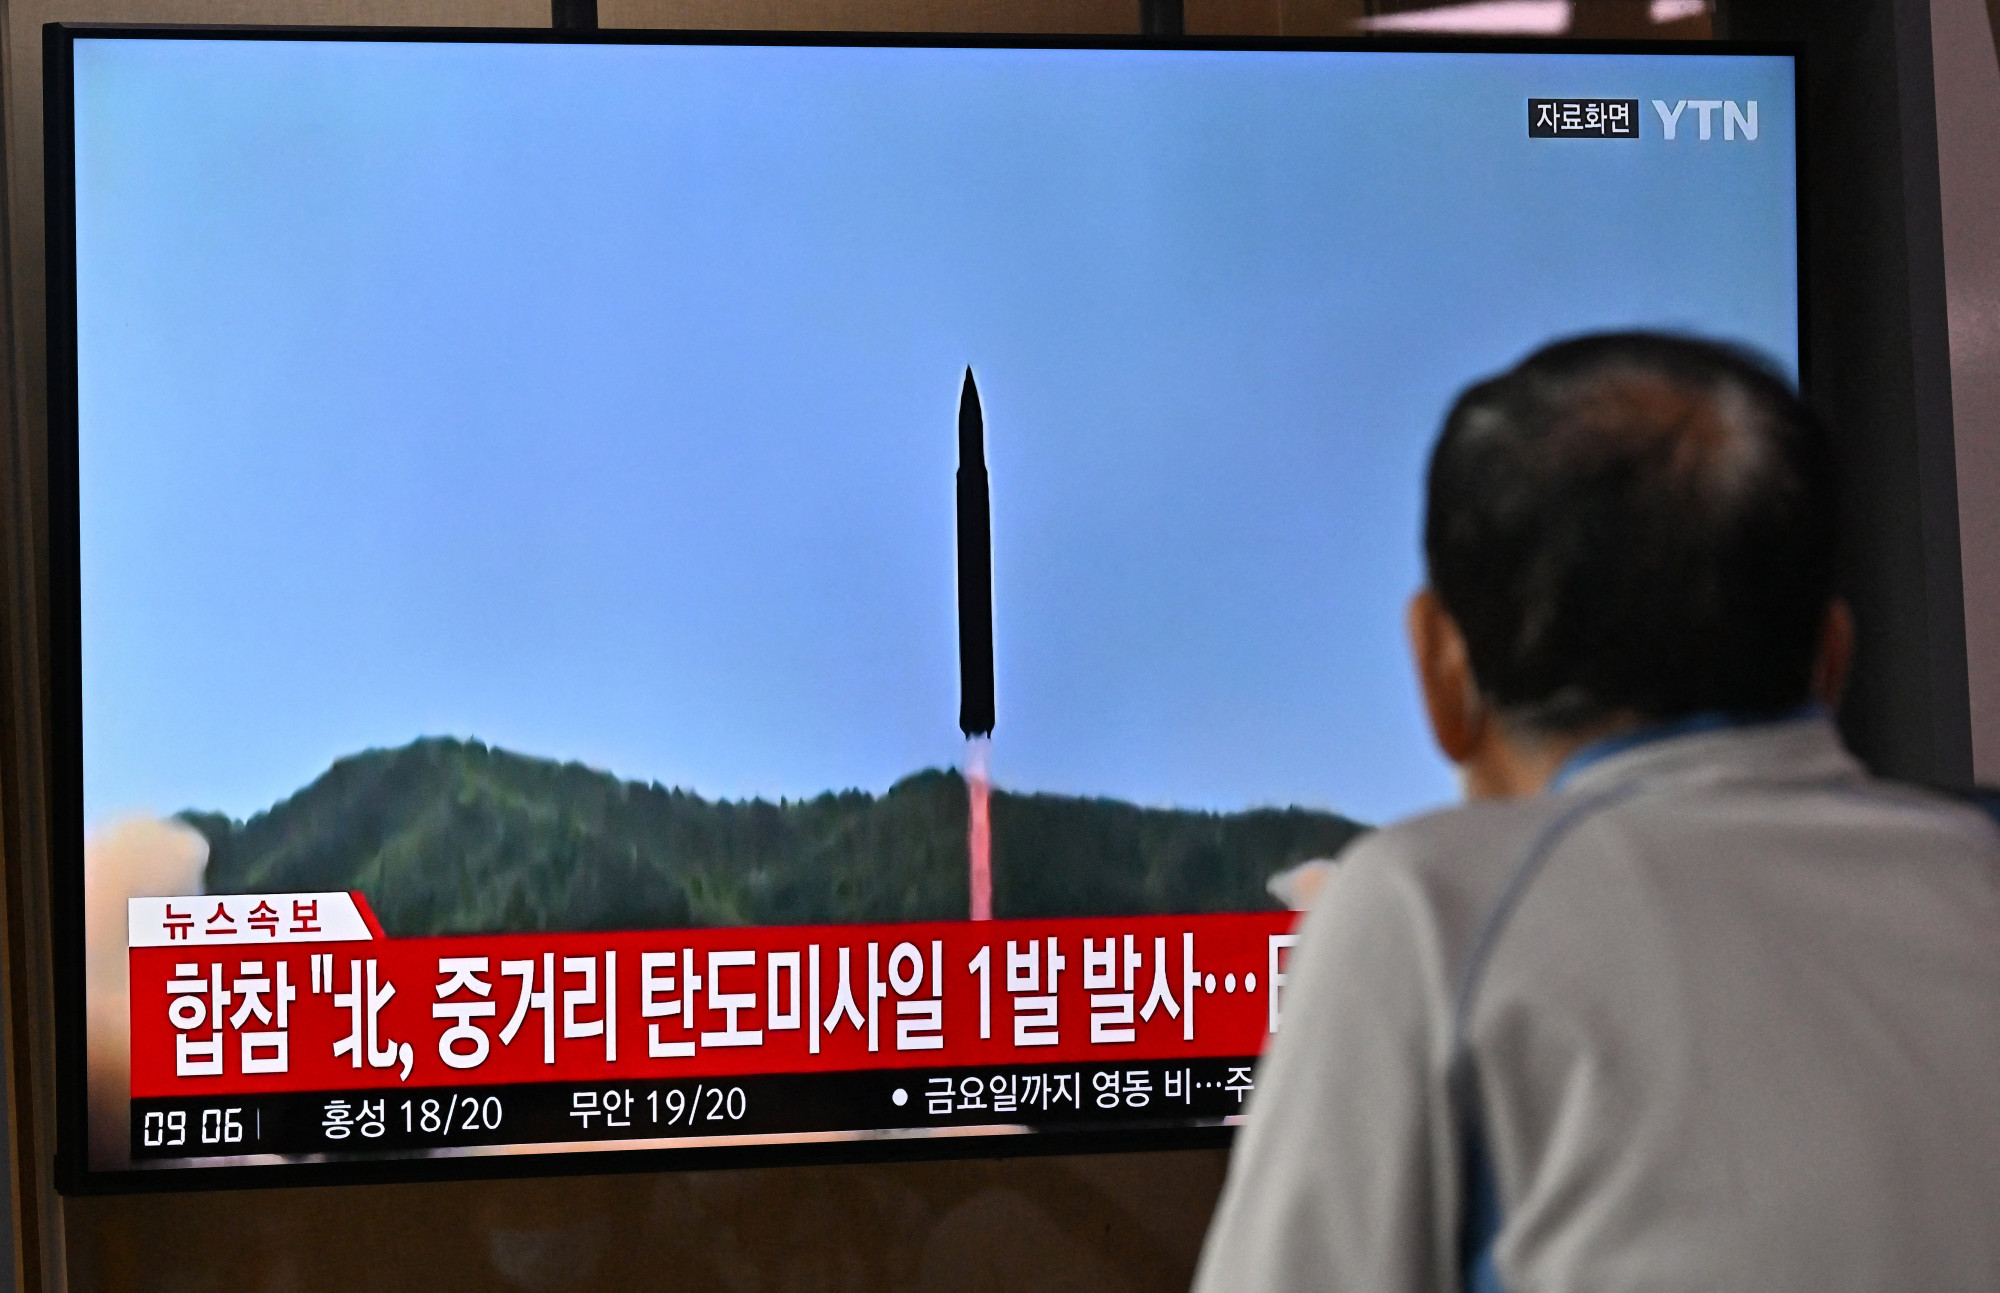 Japán polgár nézi feszülten a híreket, amiben éppen egy észak-koreai rakétakísérlet képeit mutatják.